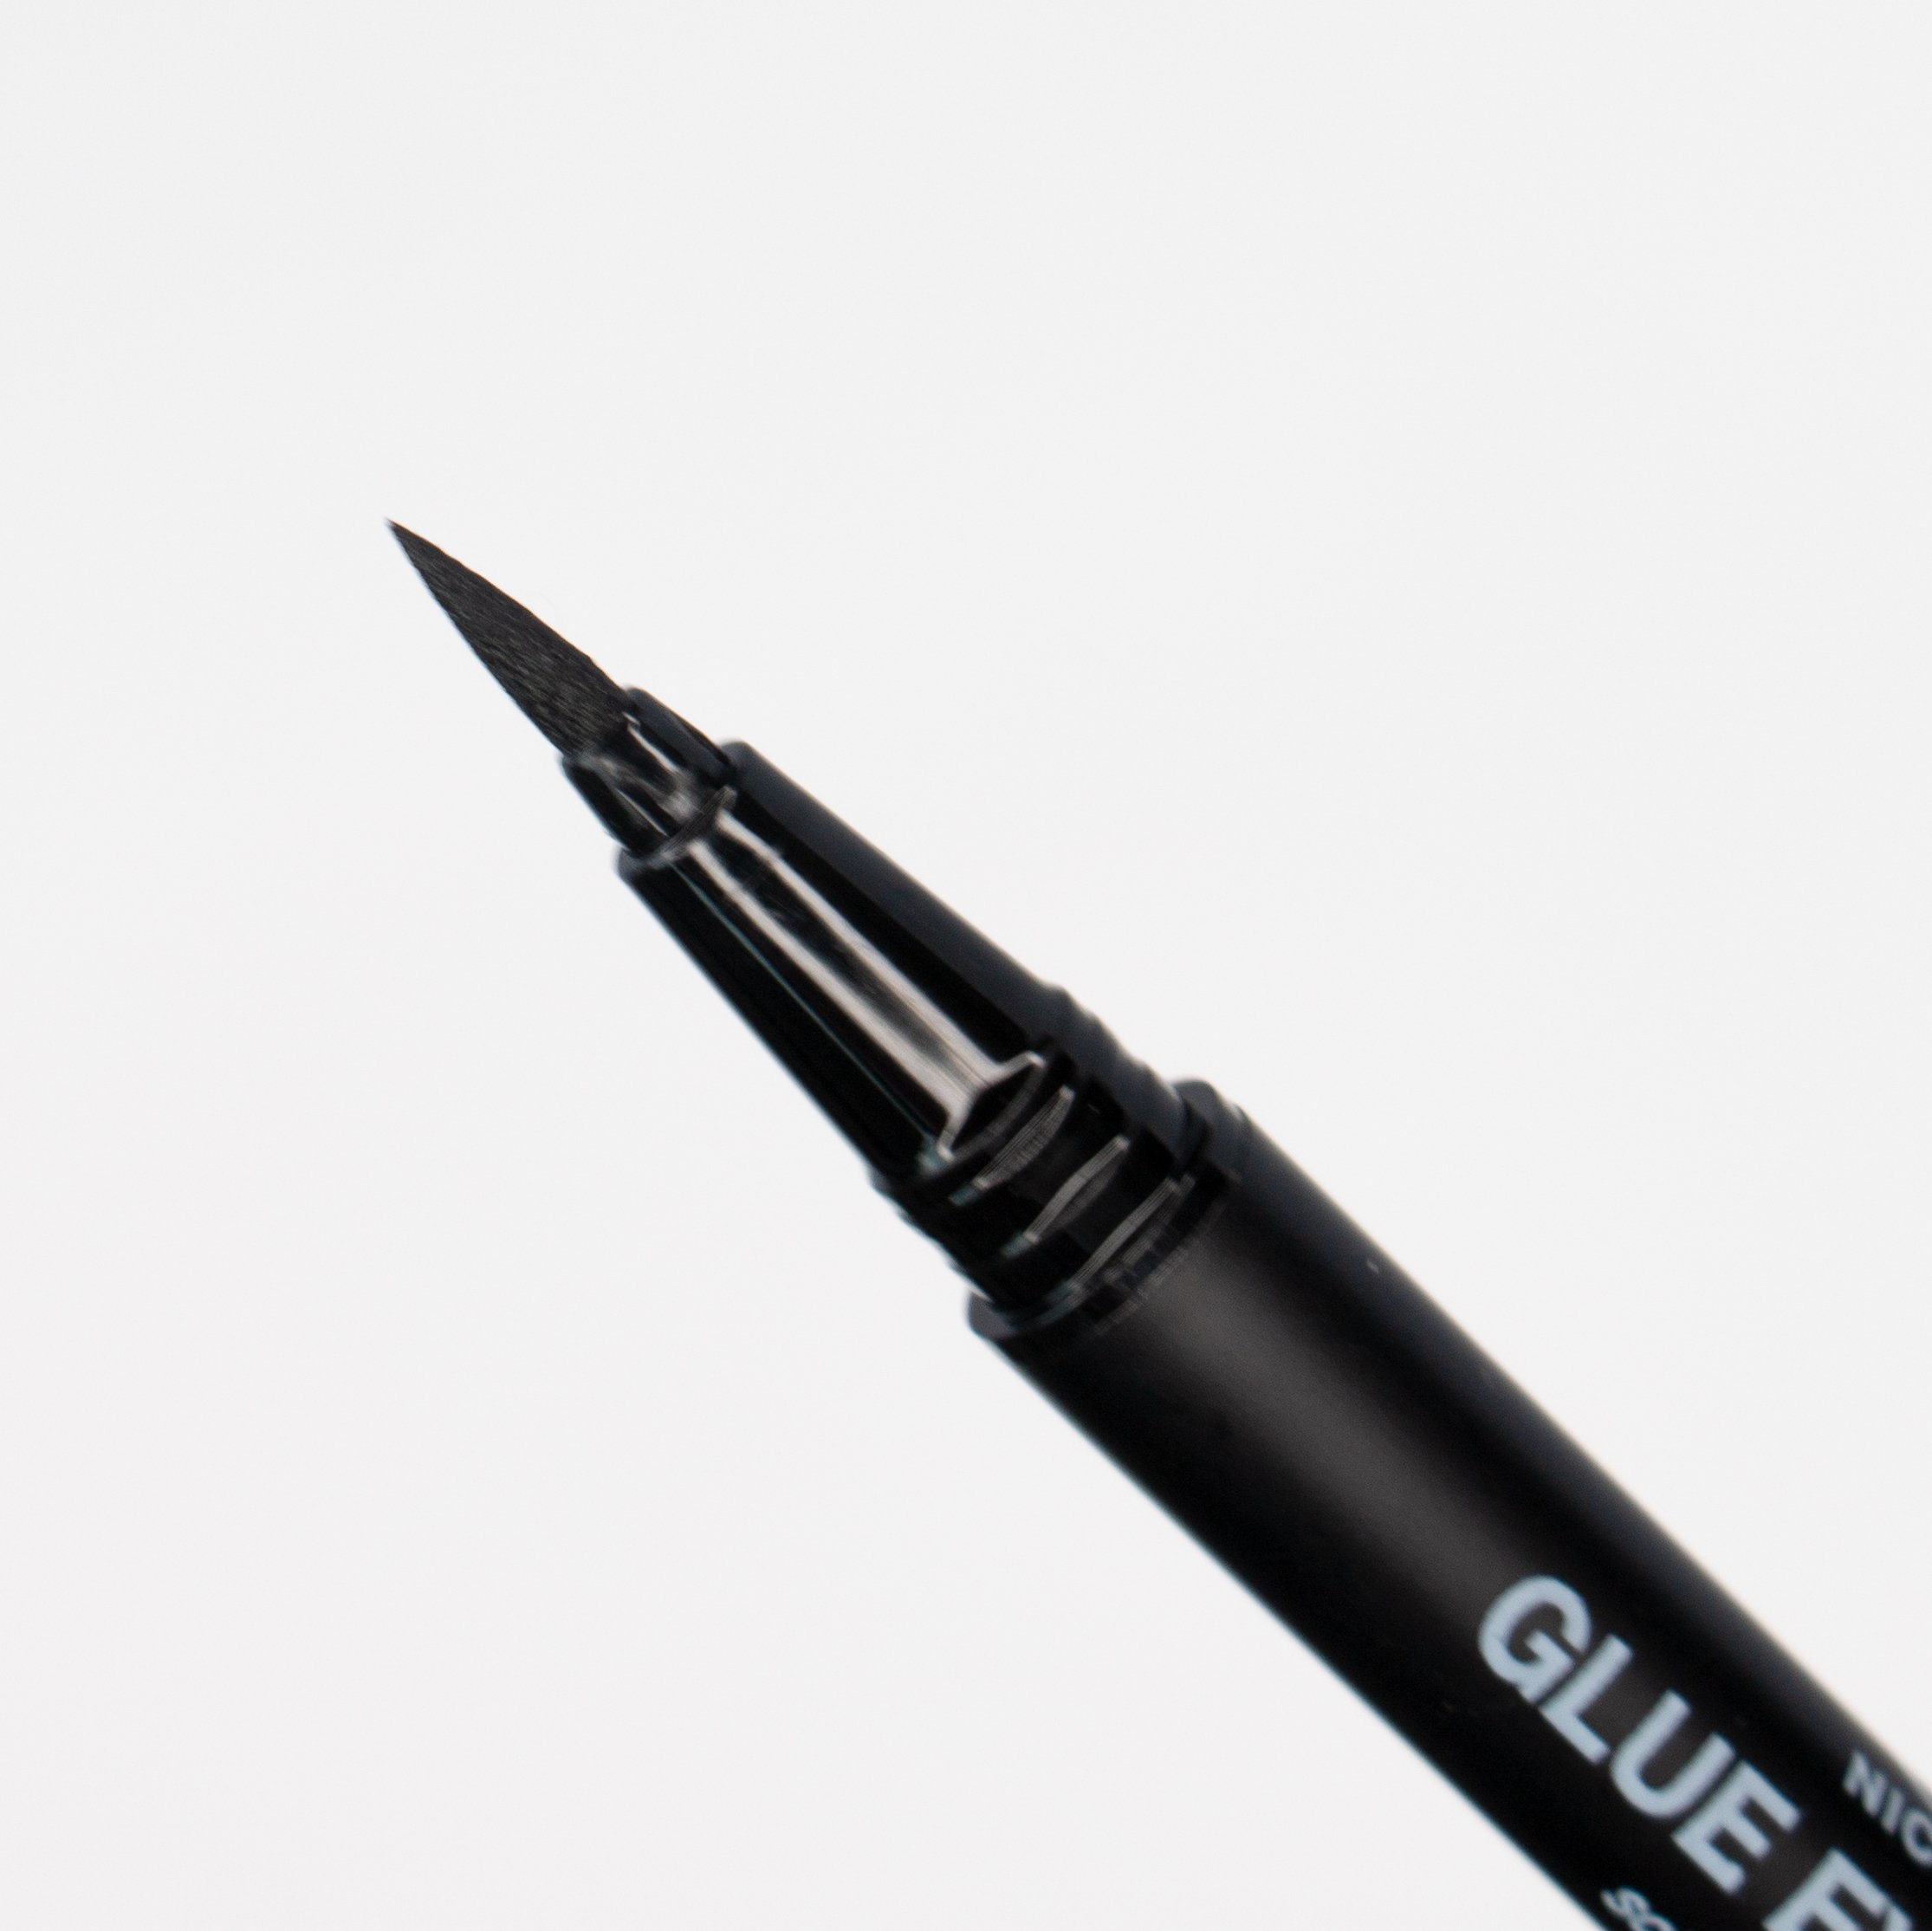 Glue Eyeliner | Transparent or Black